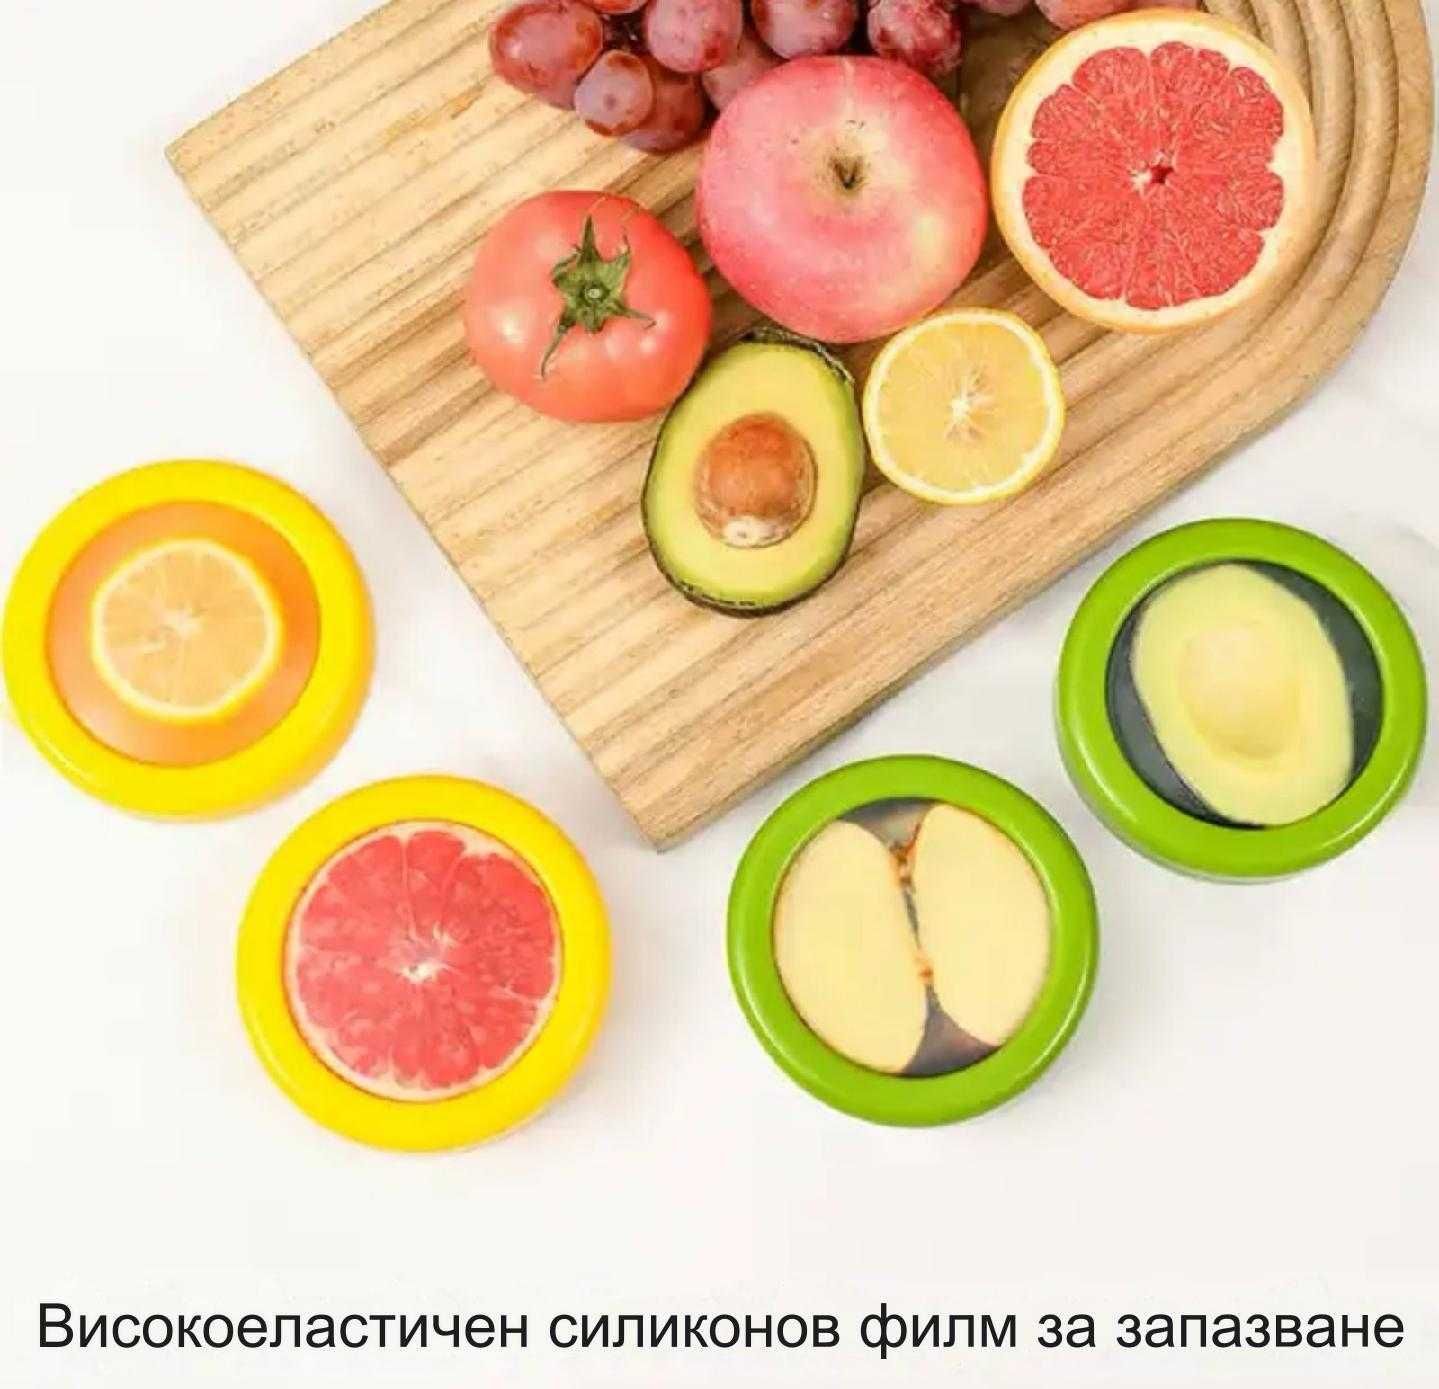 прозрачни фолиеви кутии за съхранение на плодве и зеленчуци - 2 броя